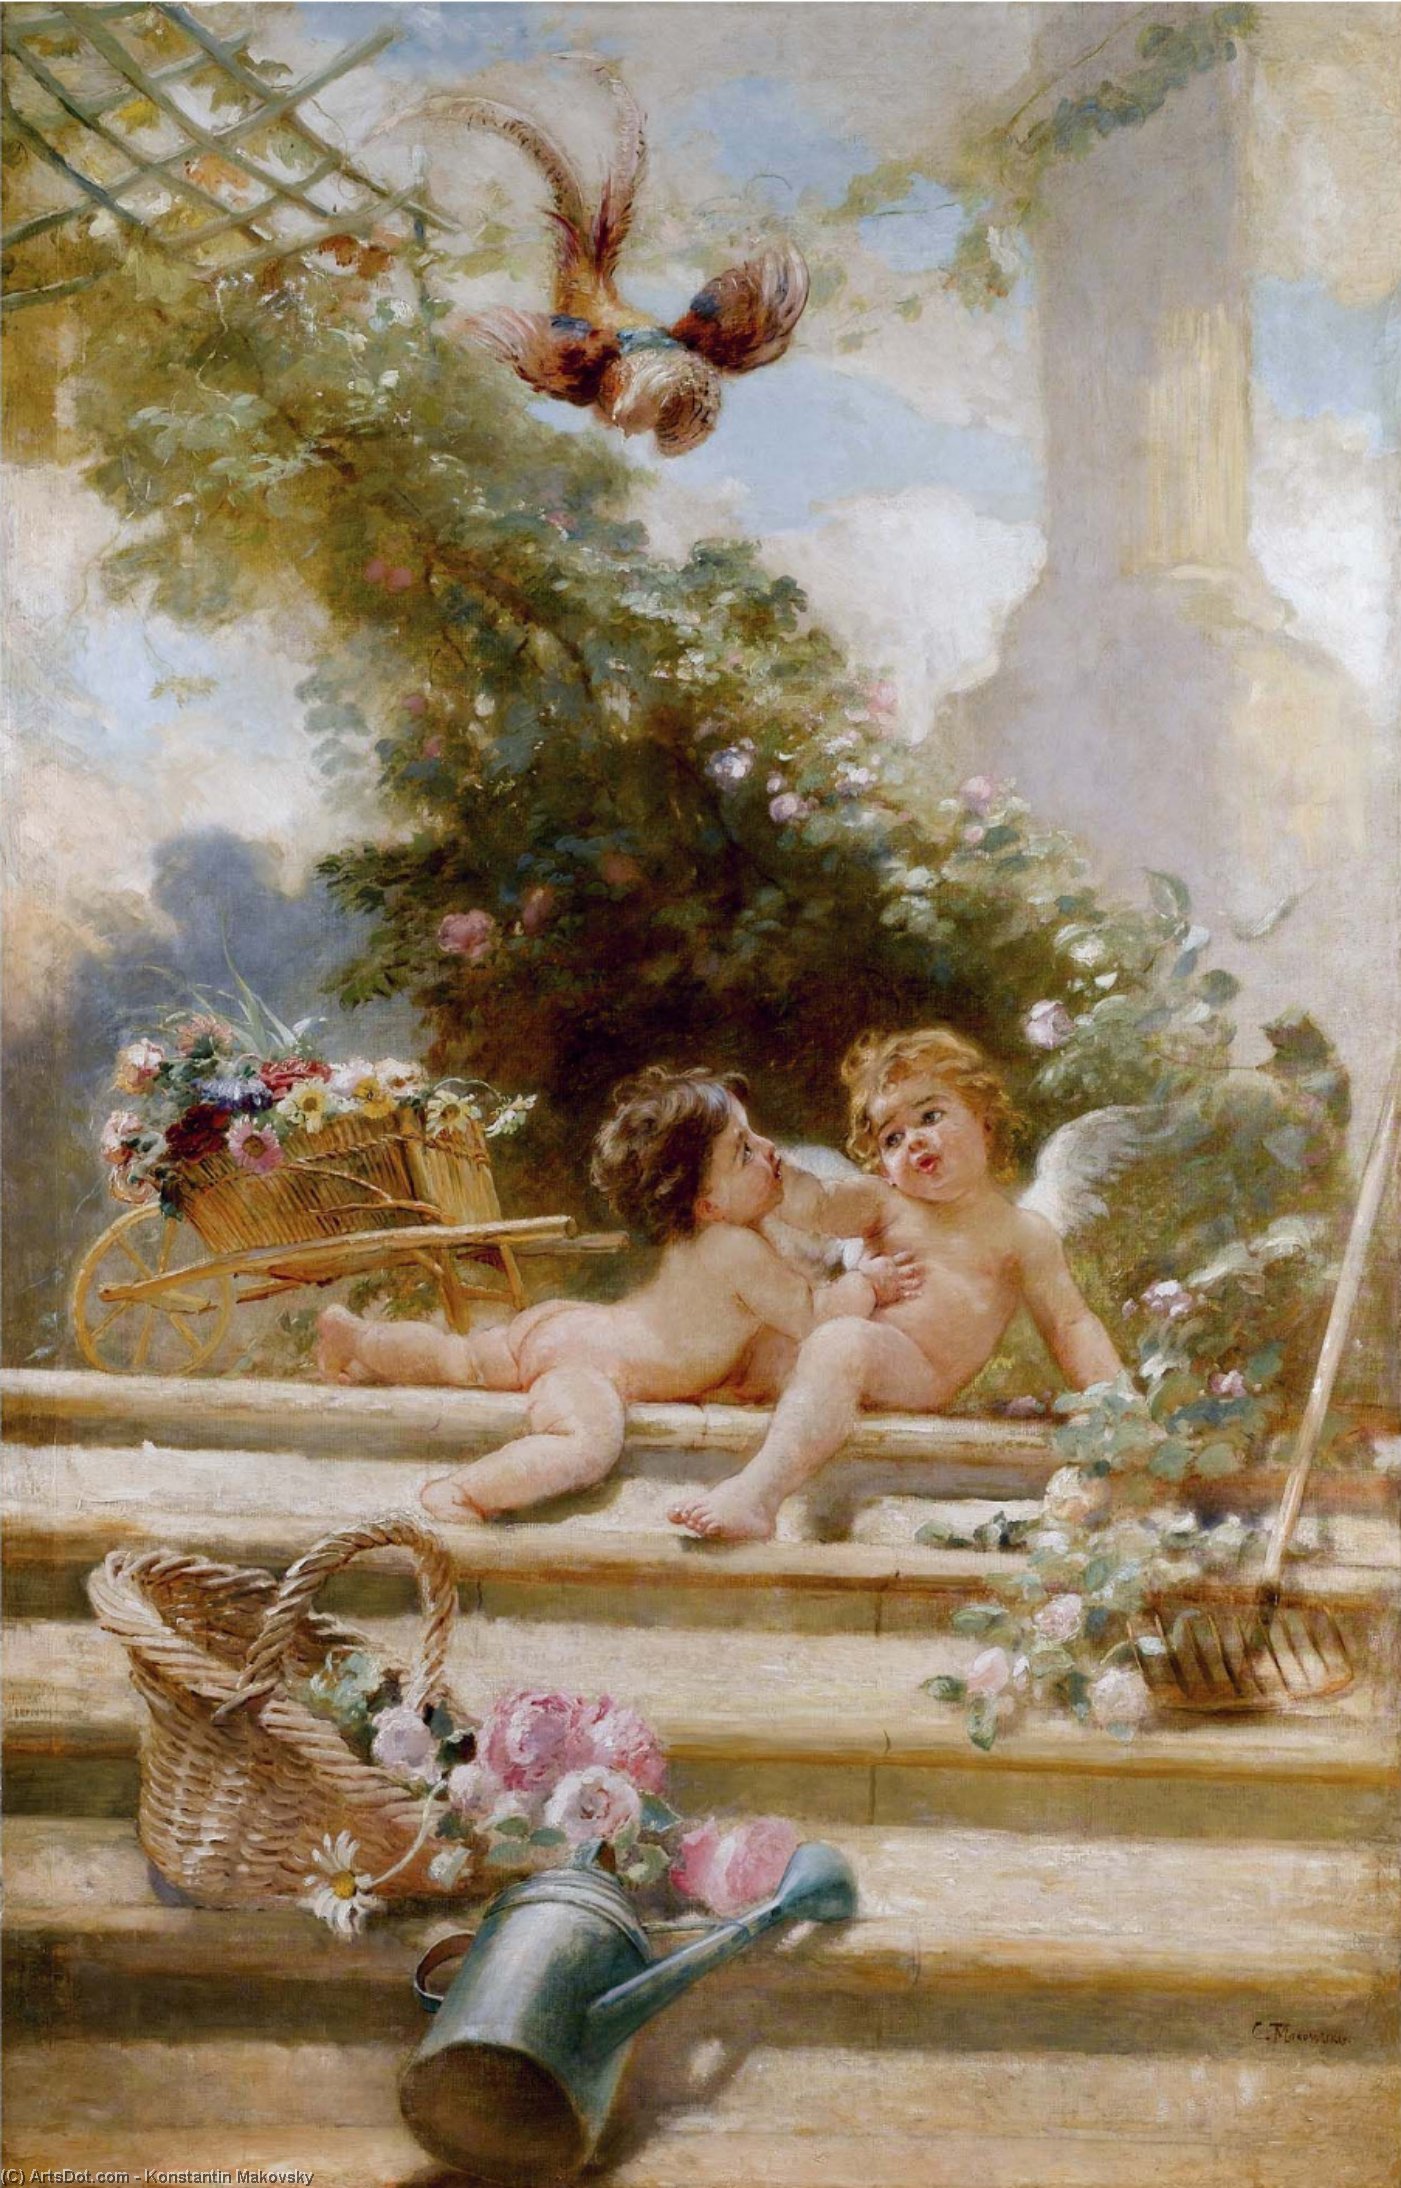 WikiOO.org - Encyclopedia of Fine Arts - Lukisan, Artwork Konstantin Yegorovich Makovsky - Cupid Gardeners